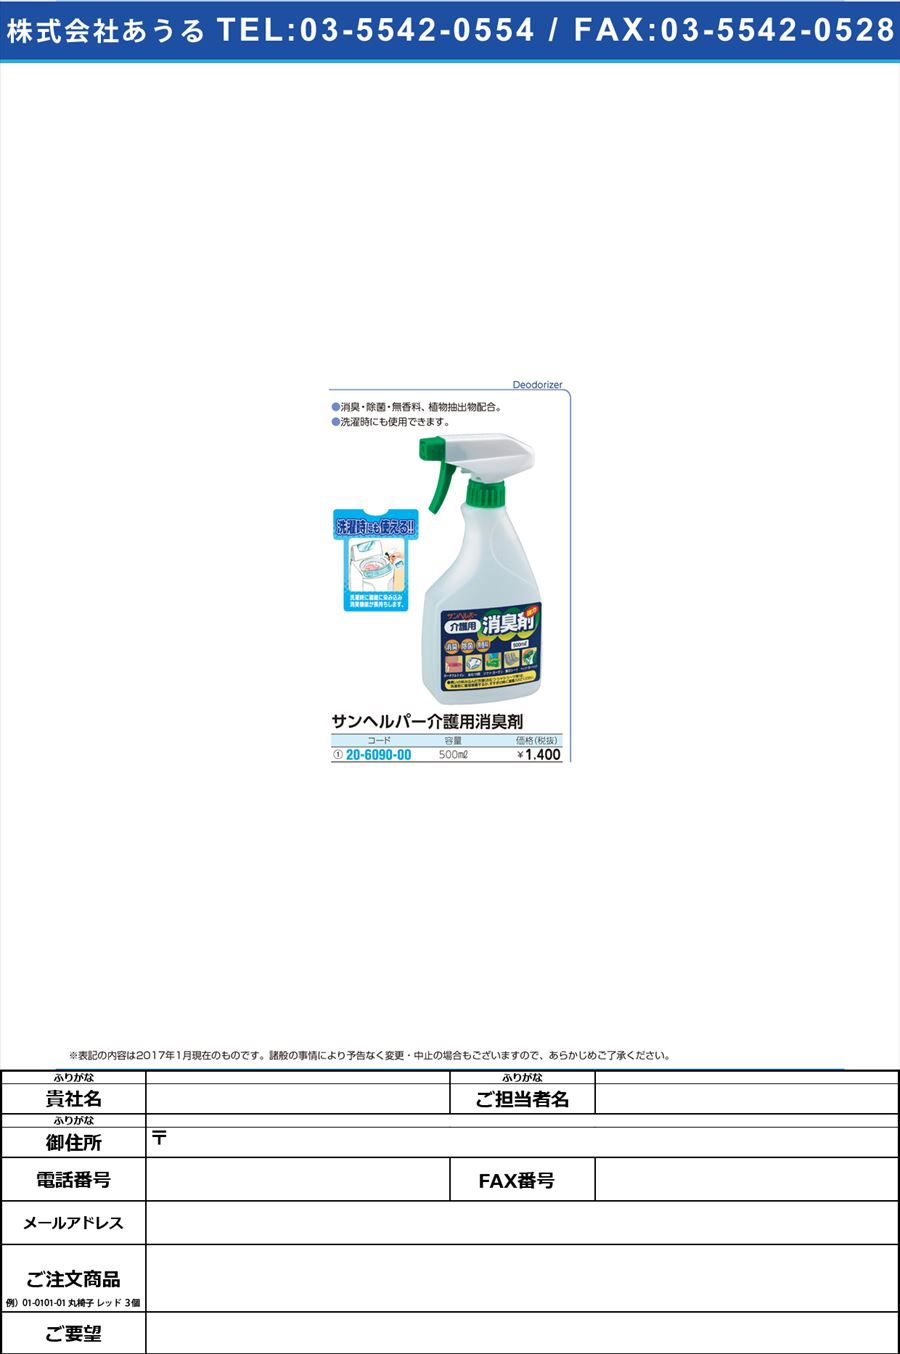 (20-6090-00)サンヘルパー介護用消臭剤 ｶｲｺﾞﾖｳｼｮｳｼｭｳｻﾞｲ 500ML(20-6090-00)【1本単位】【2017年カタログ商品】